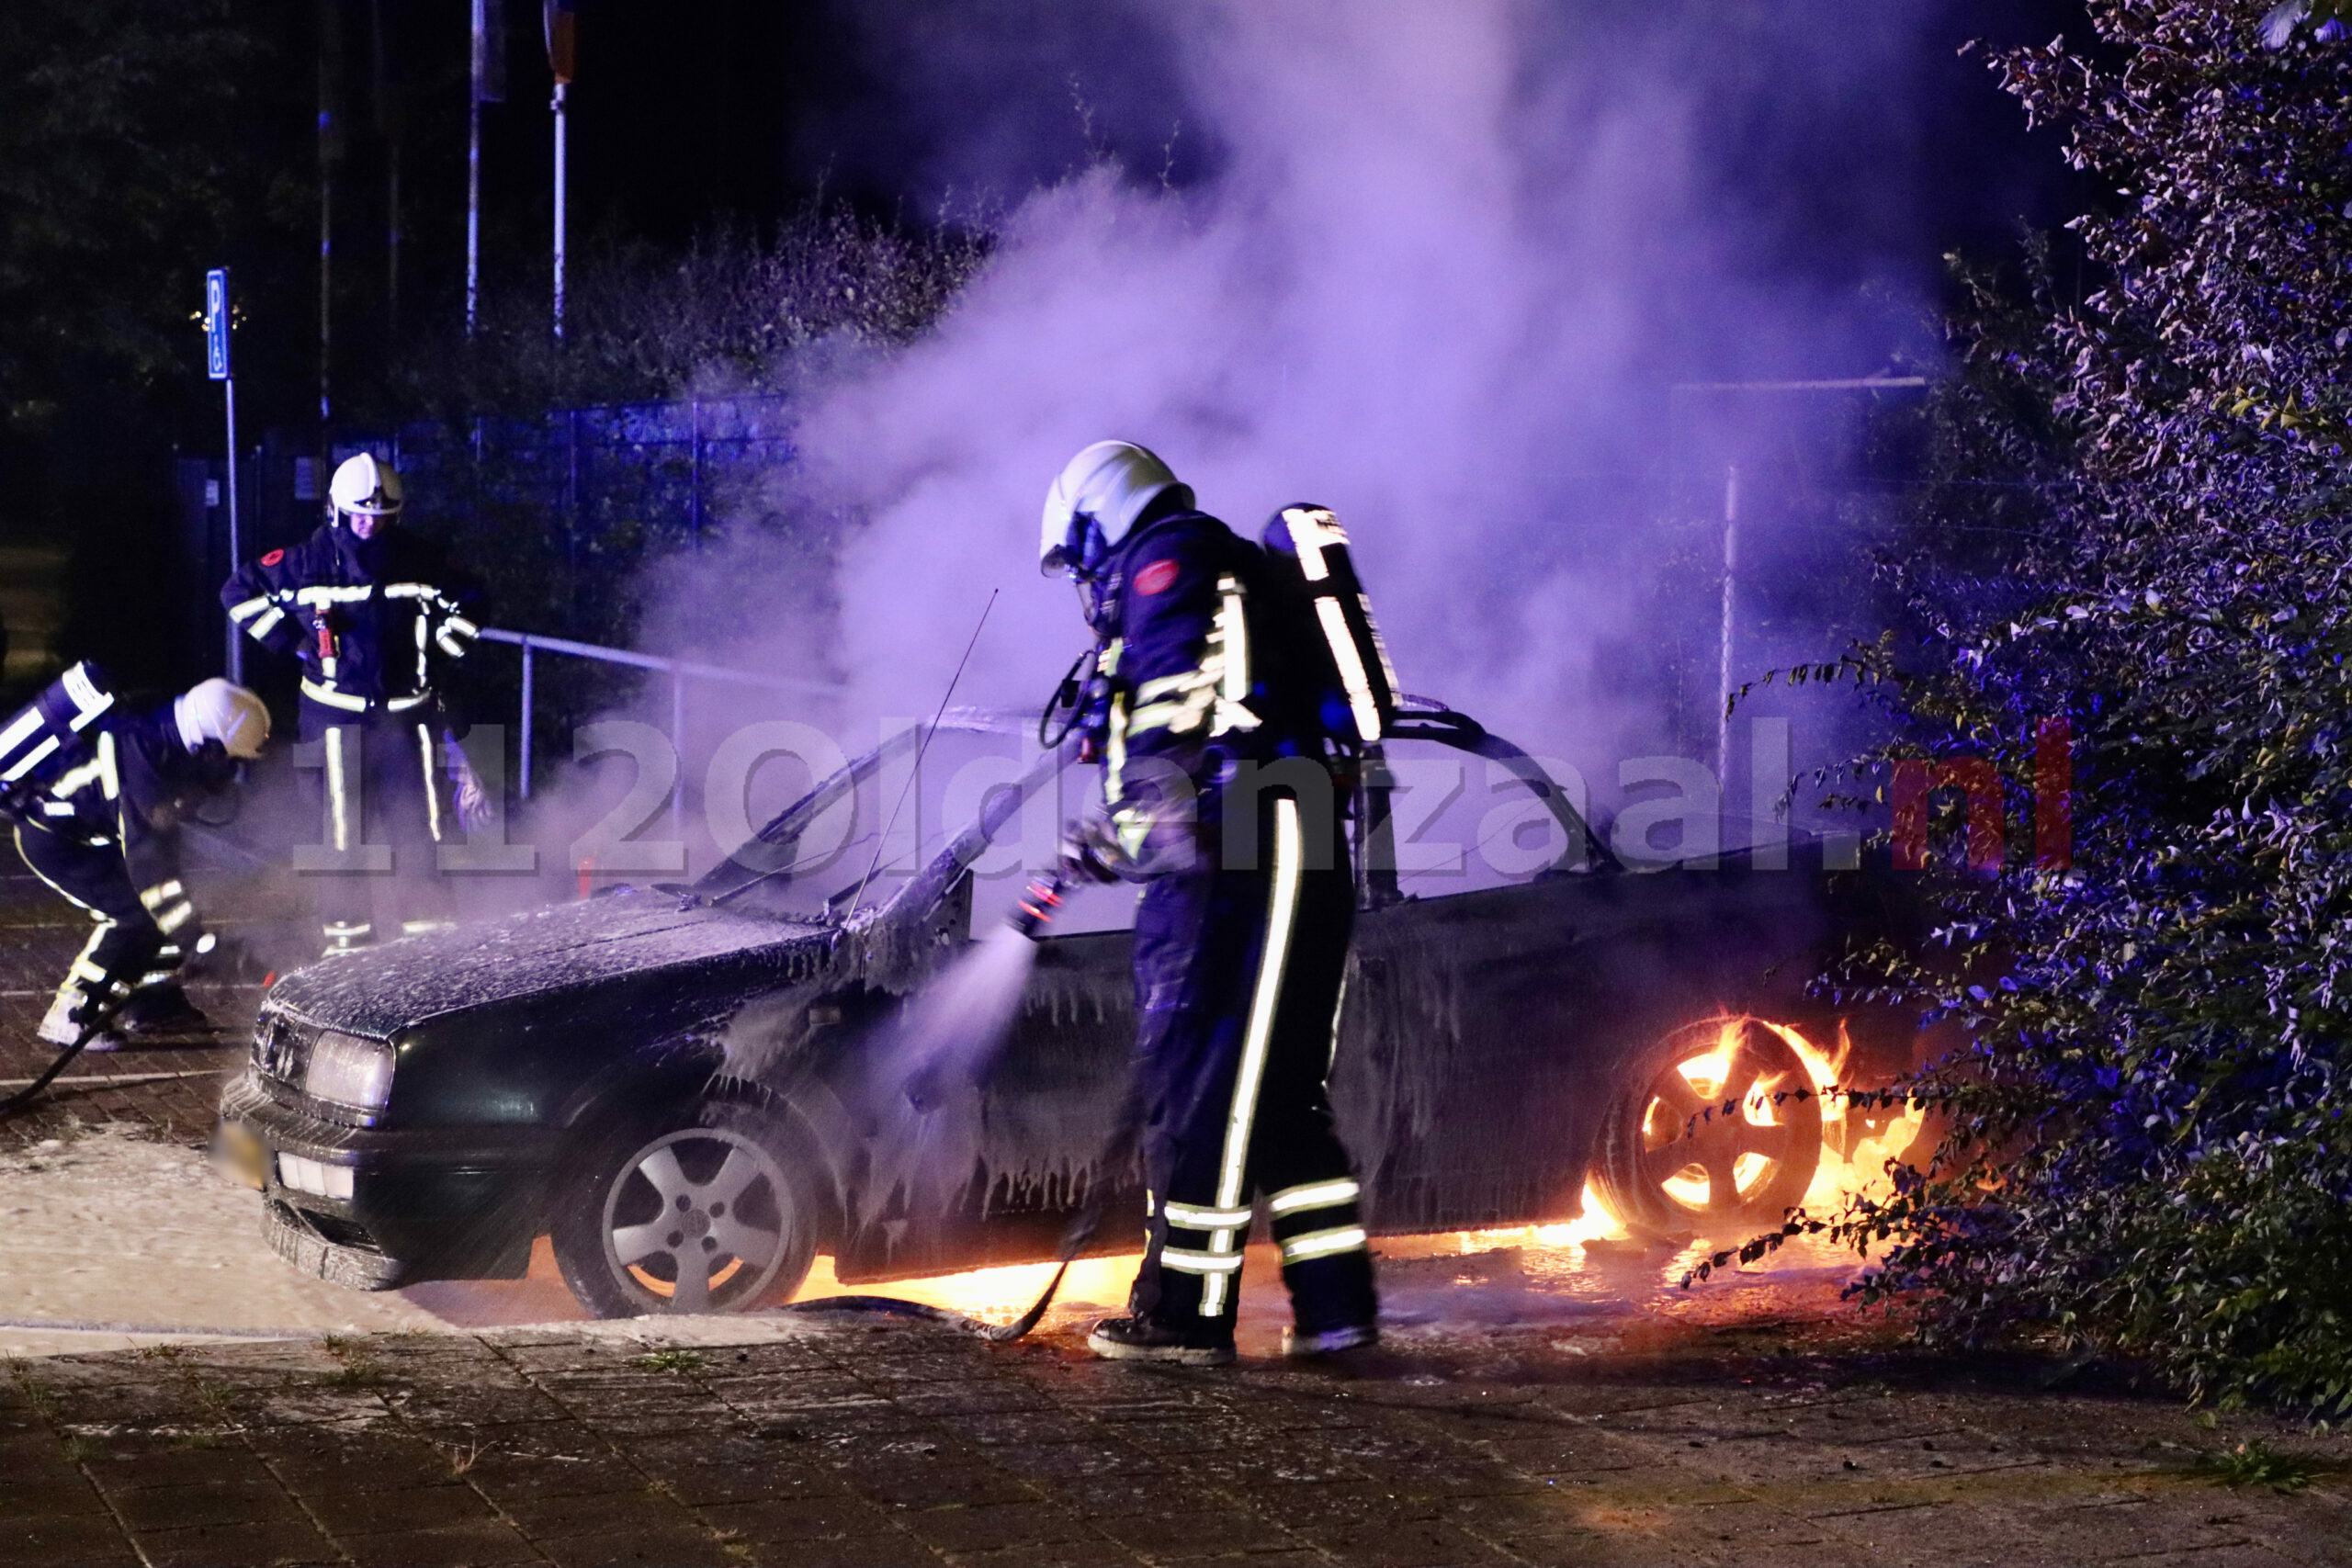 VIDEO: Auto brandt volledig uit in Oldenzaal